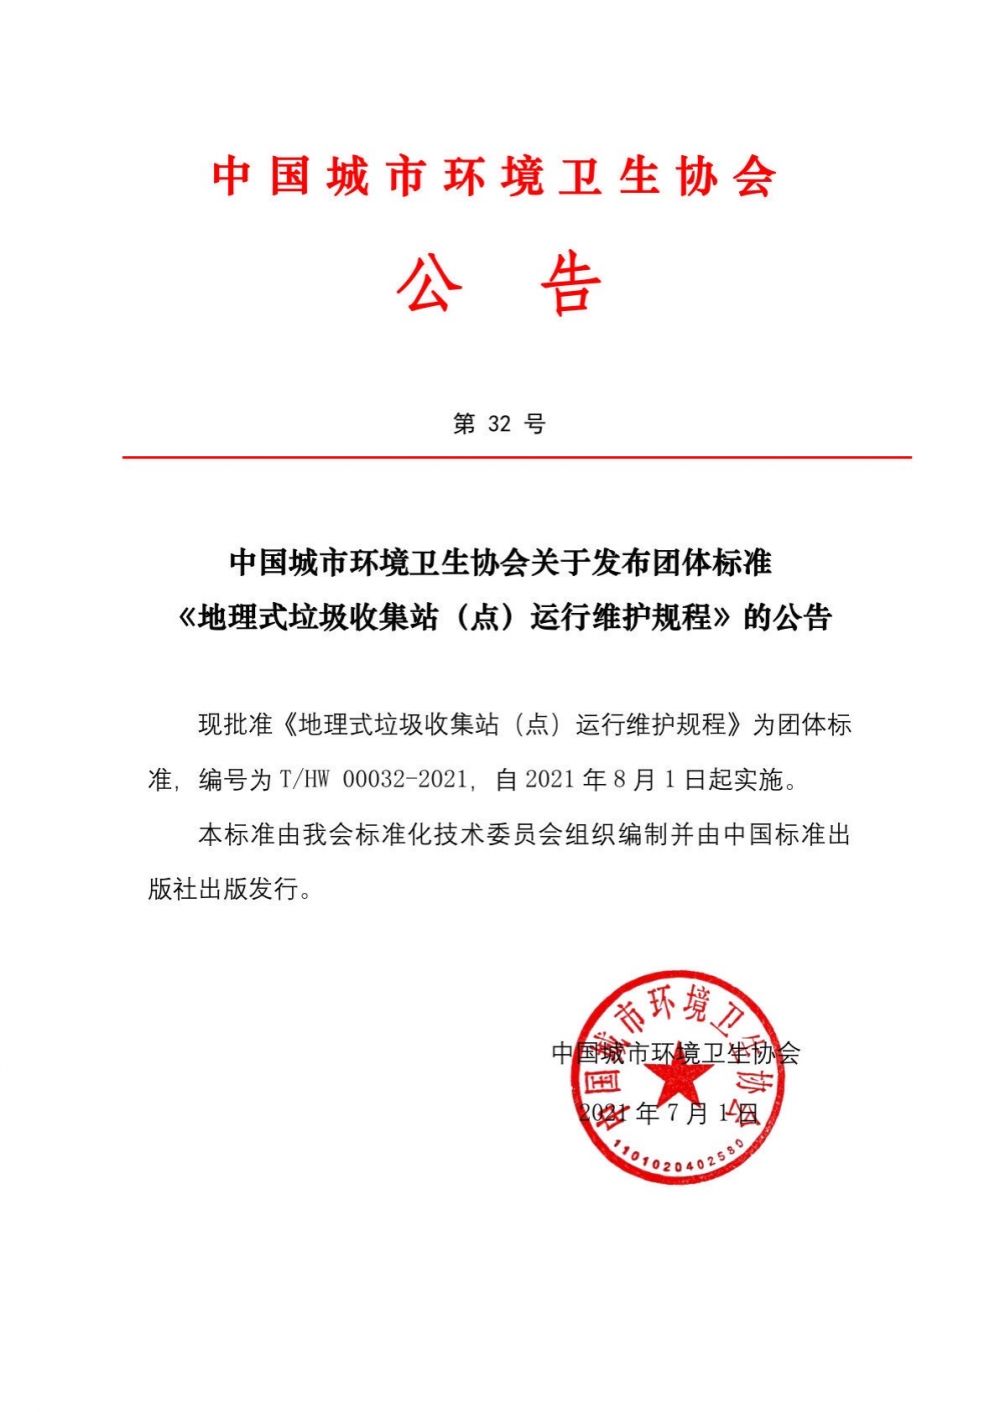 公告第32号中国城市环境卫生协会关于发布团体标准《地理式垃圾收集站（点）运行维护规程》的公告.jpg